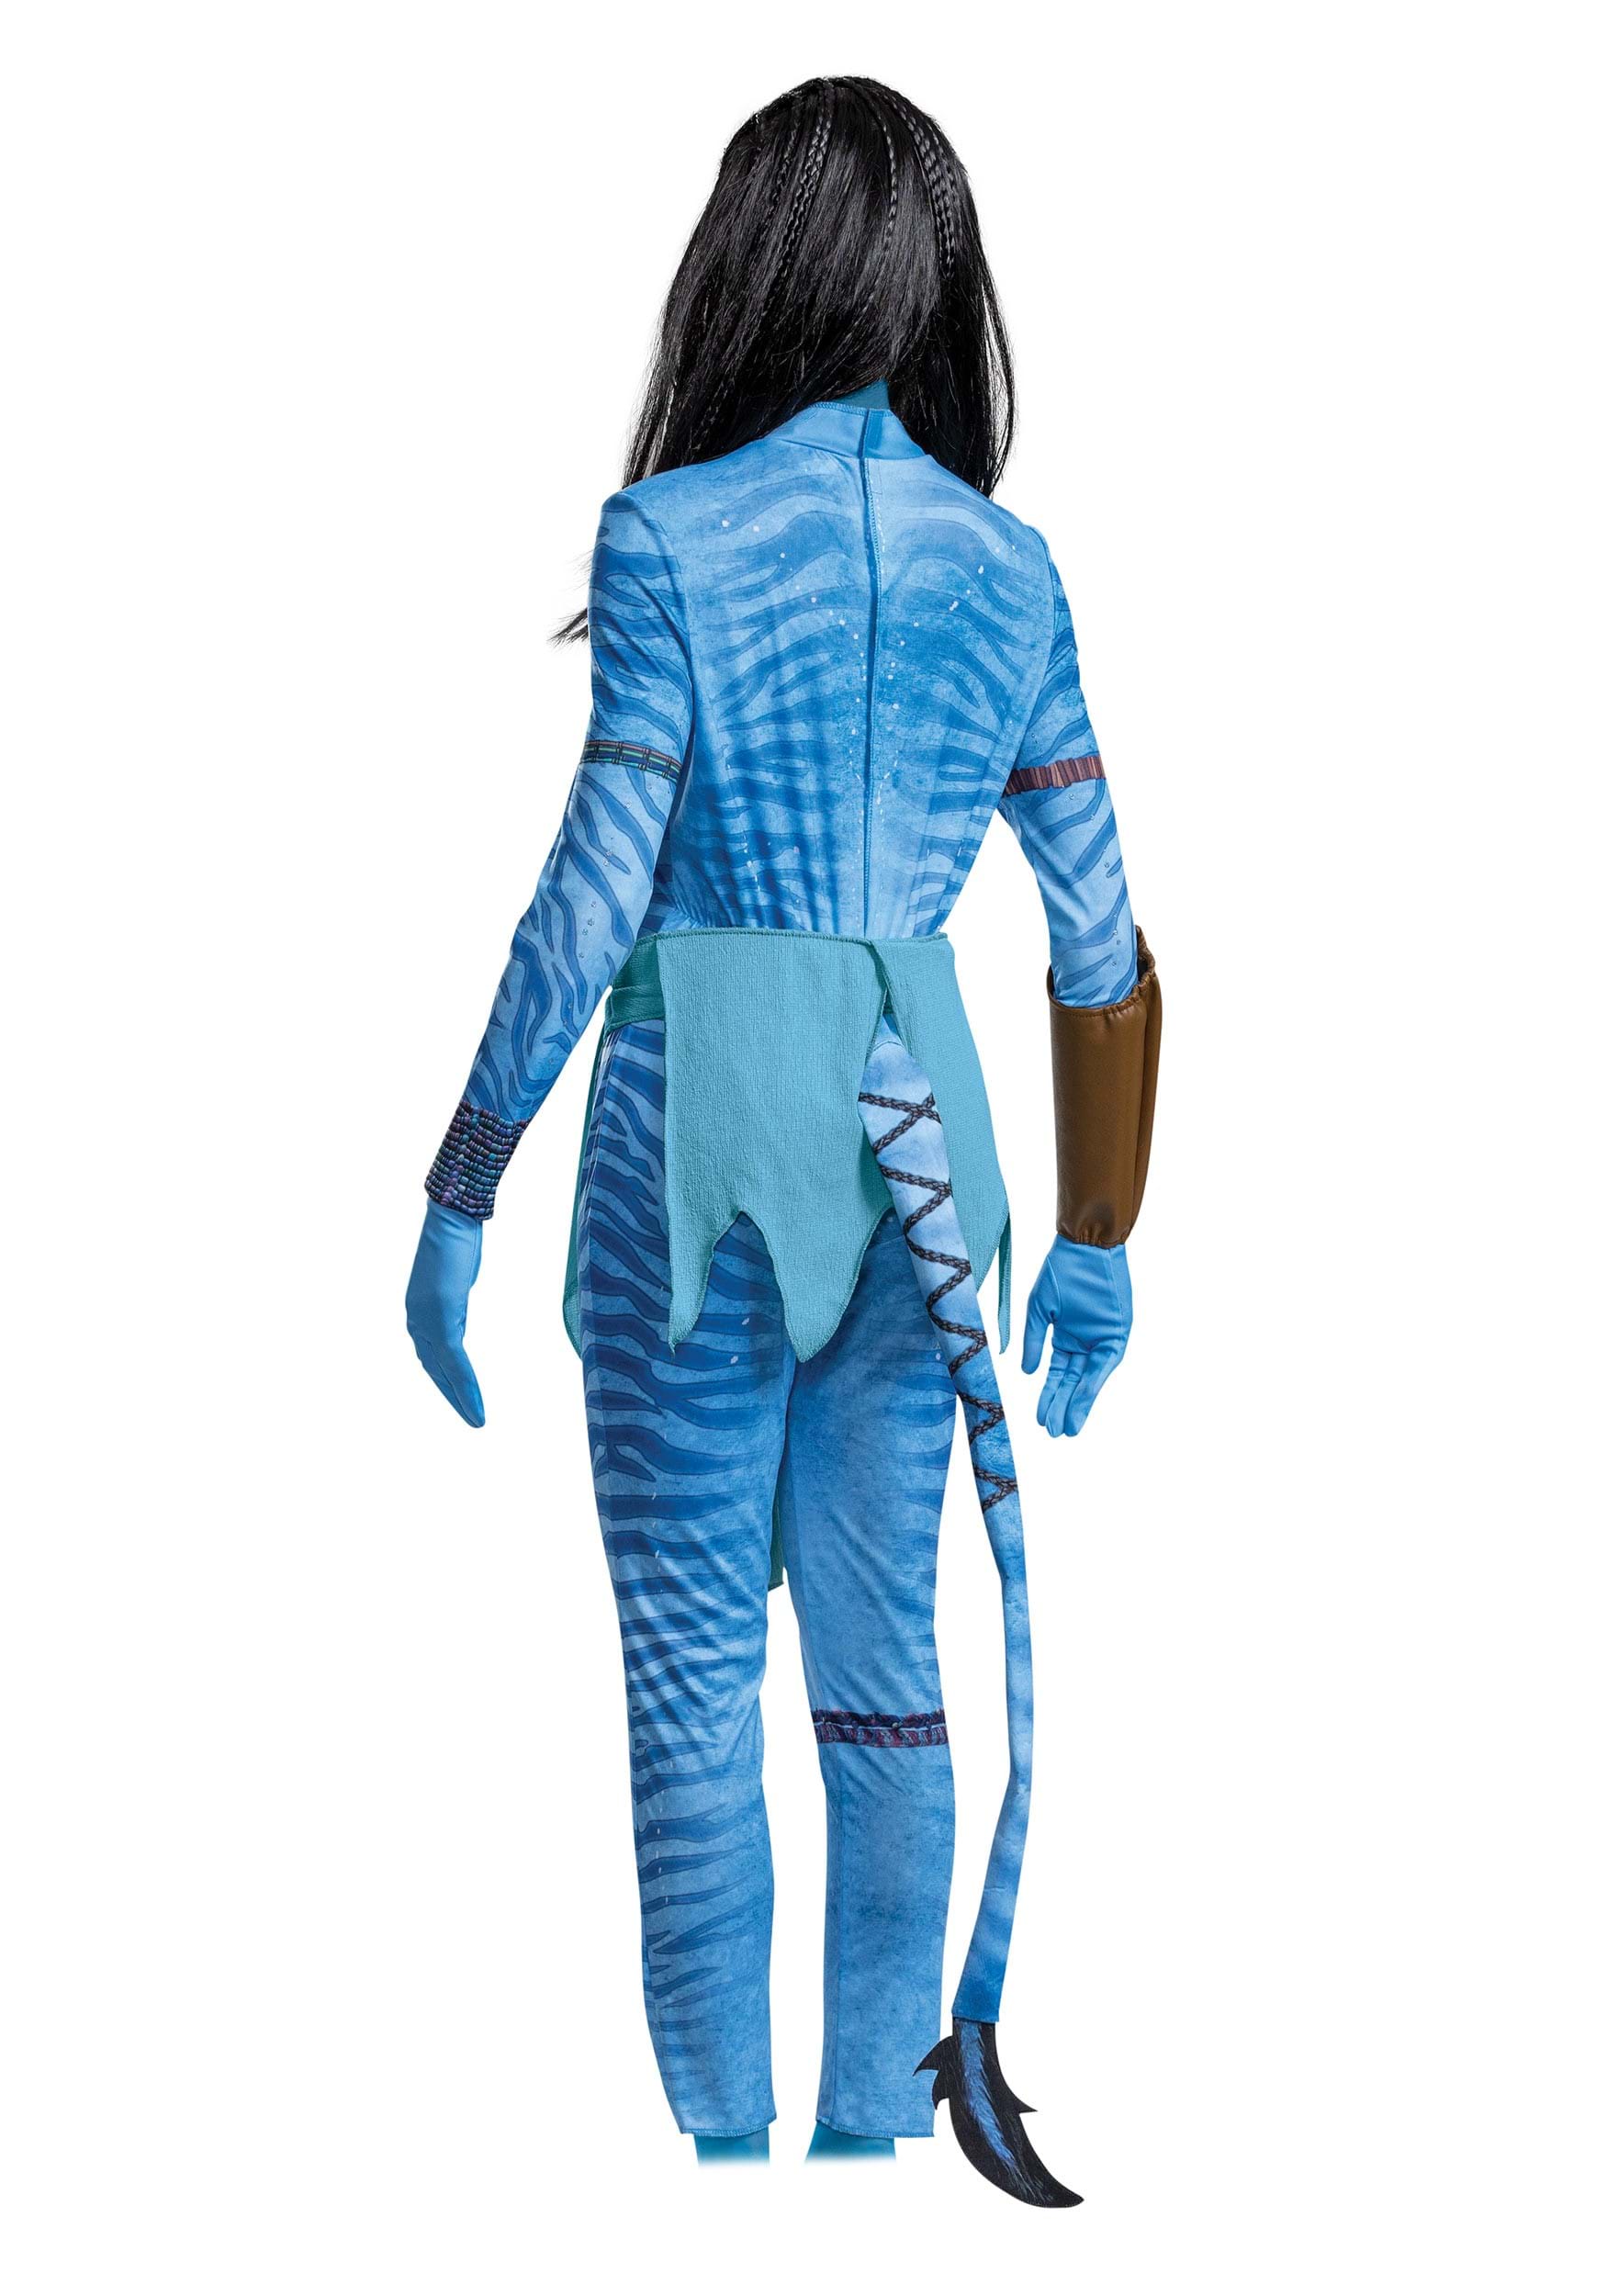 Avatar Deluxe Neytiri Women's Fancy Dress Costume